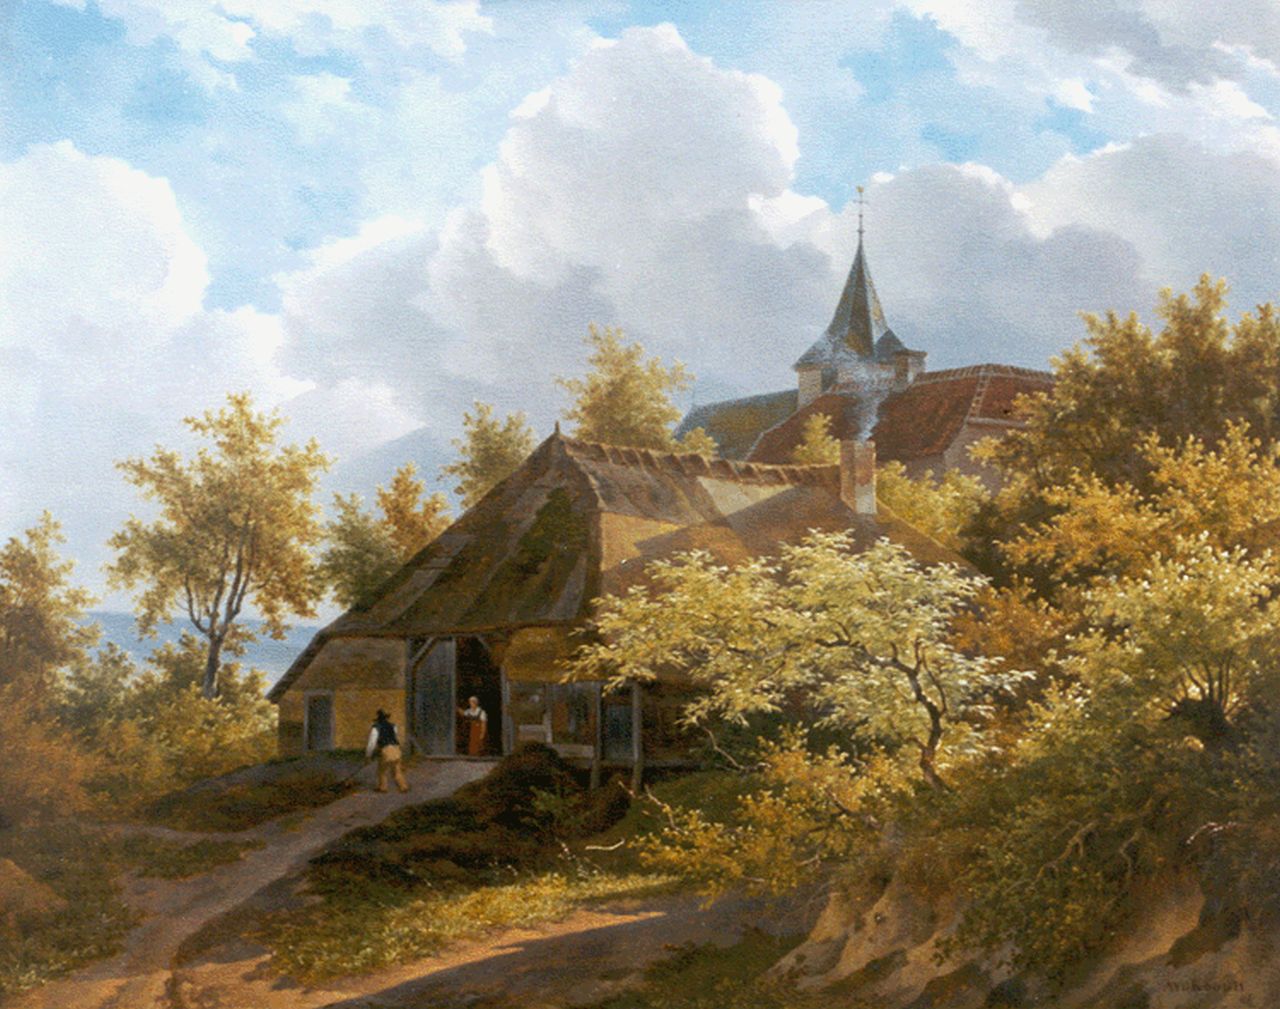 Adrianus van der Koogh | Boerenhuis in boomrijk landschap, olieverf op paneel, 43,0 x 53,0 cm, gesigneerd r.o.